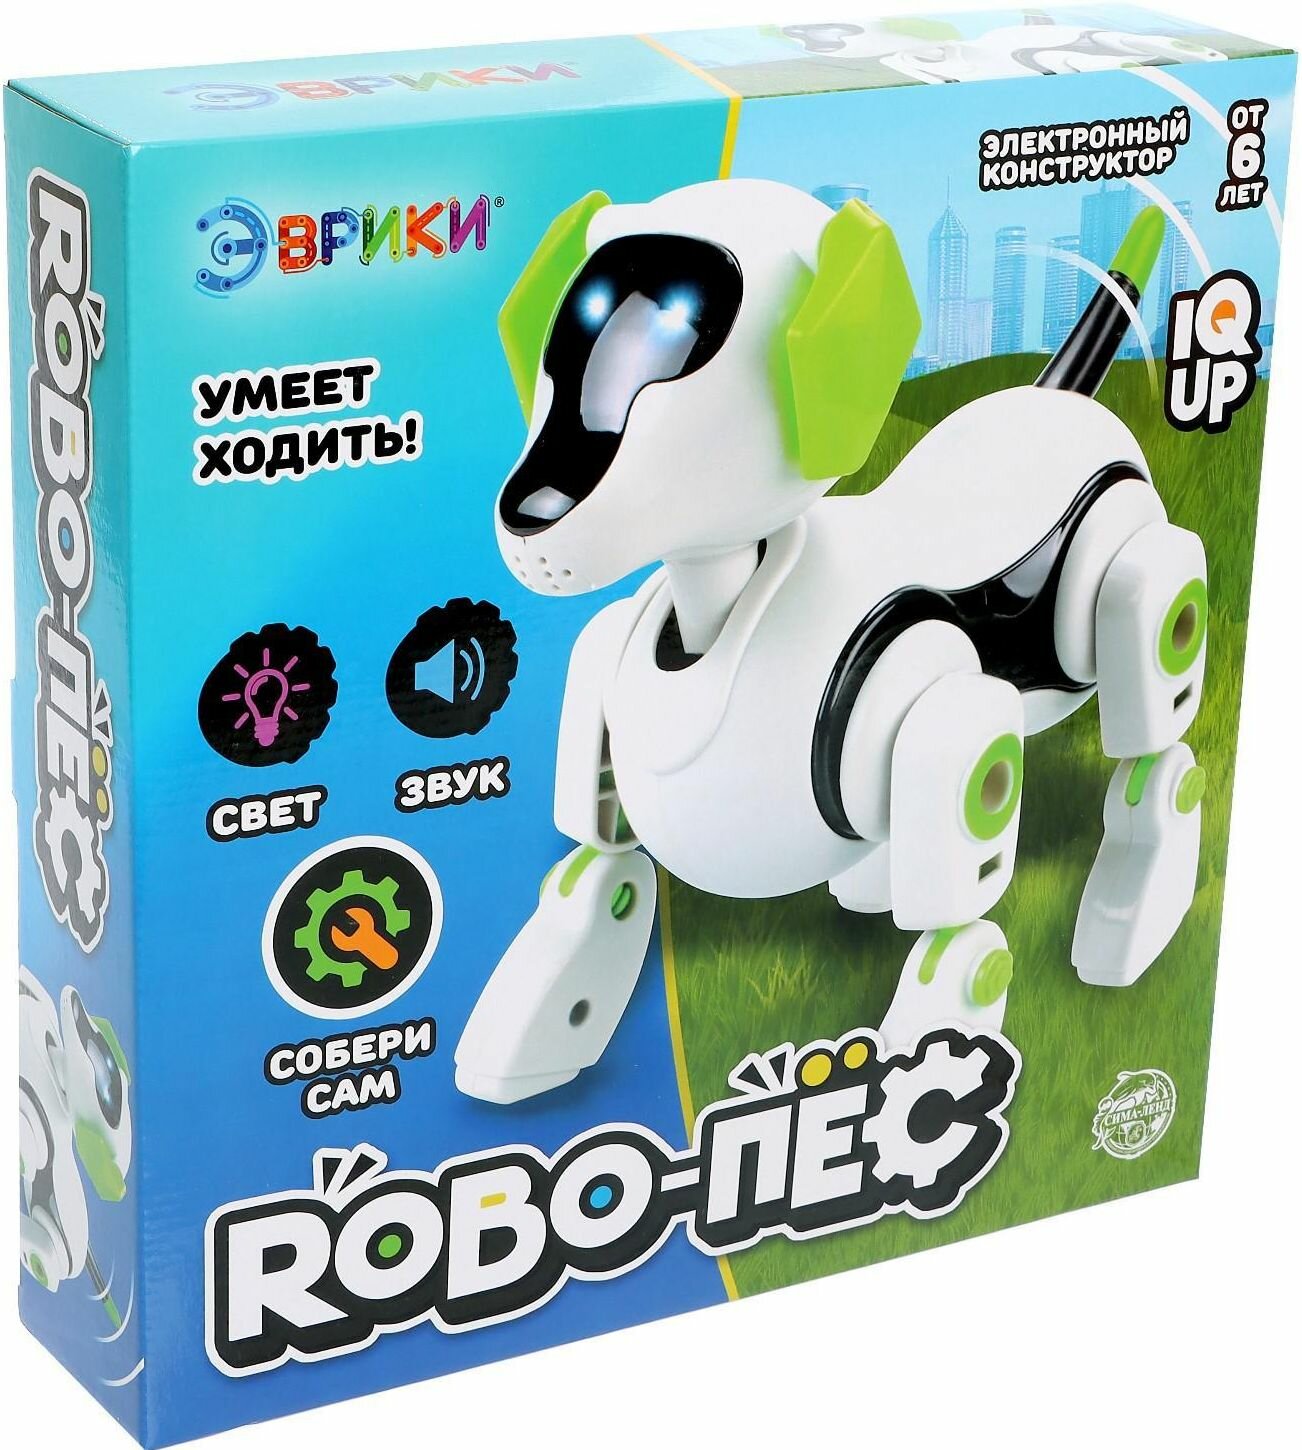 Электронный конструктор-робот "Robo-пёс" для детей, набор детский, игрушка интерактивная со звуковыми и световыми эффектами, на батарейках, робототехника, собери сам, ходит сам